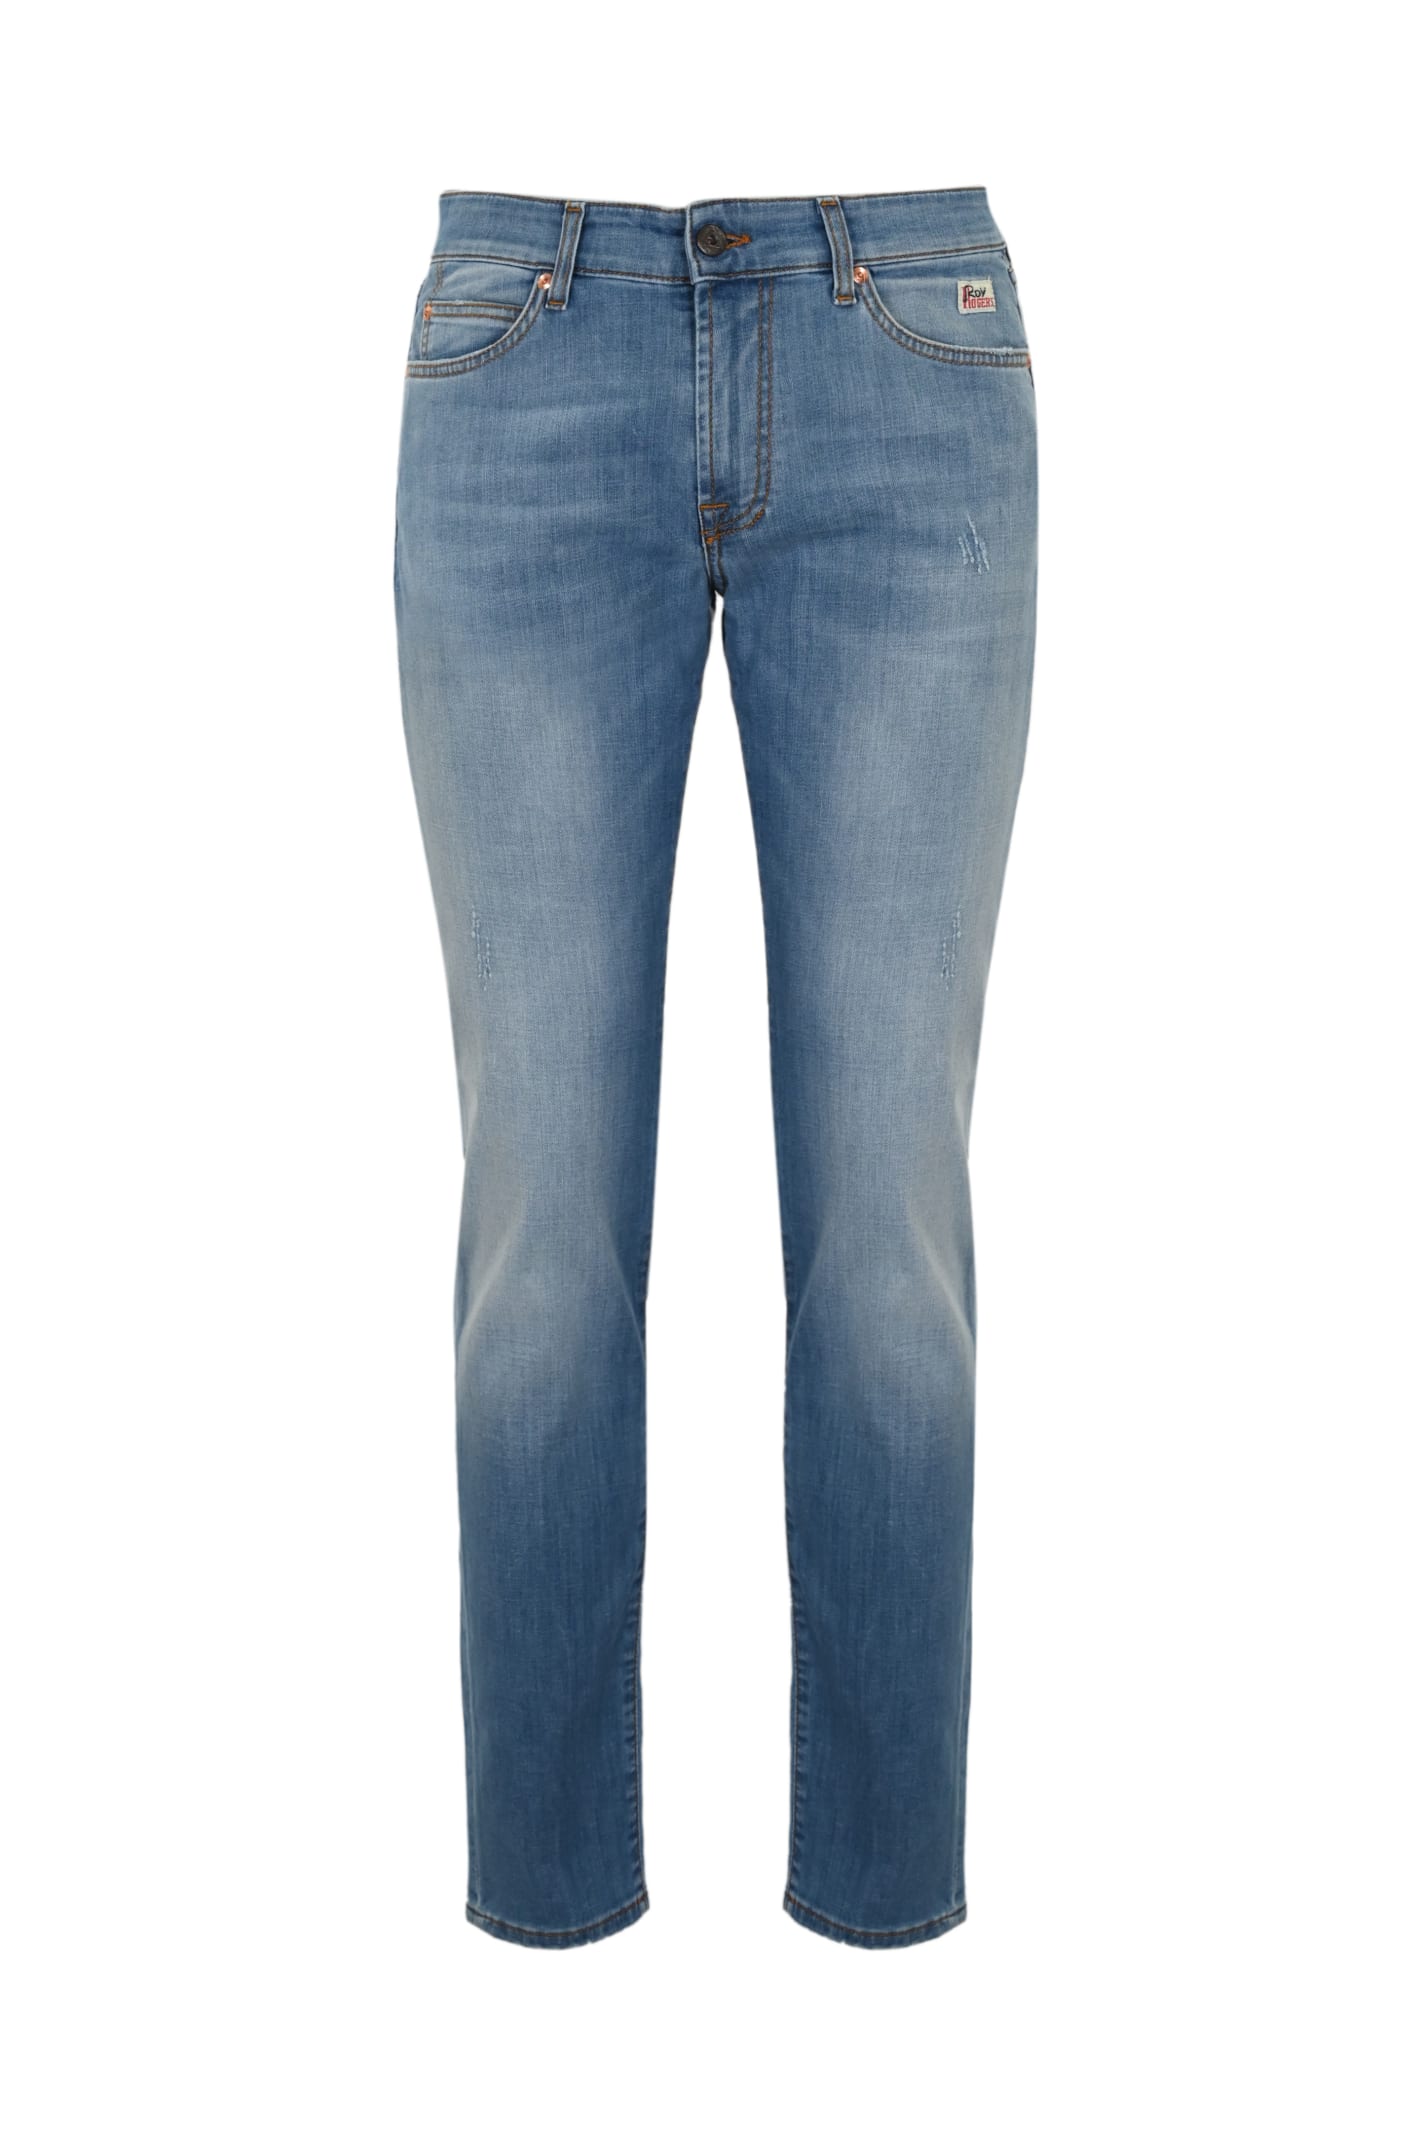 Roy Rogers 517 Js Jeans In Denim